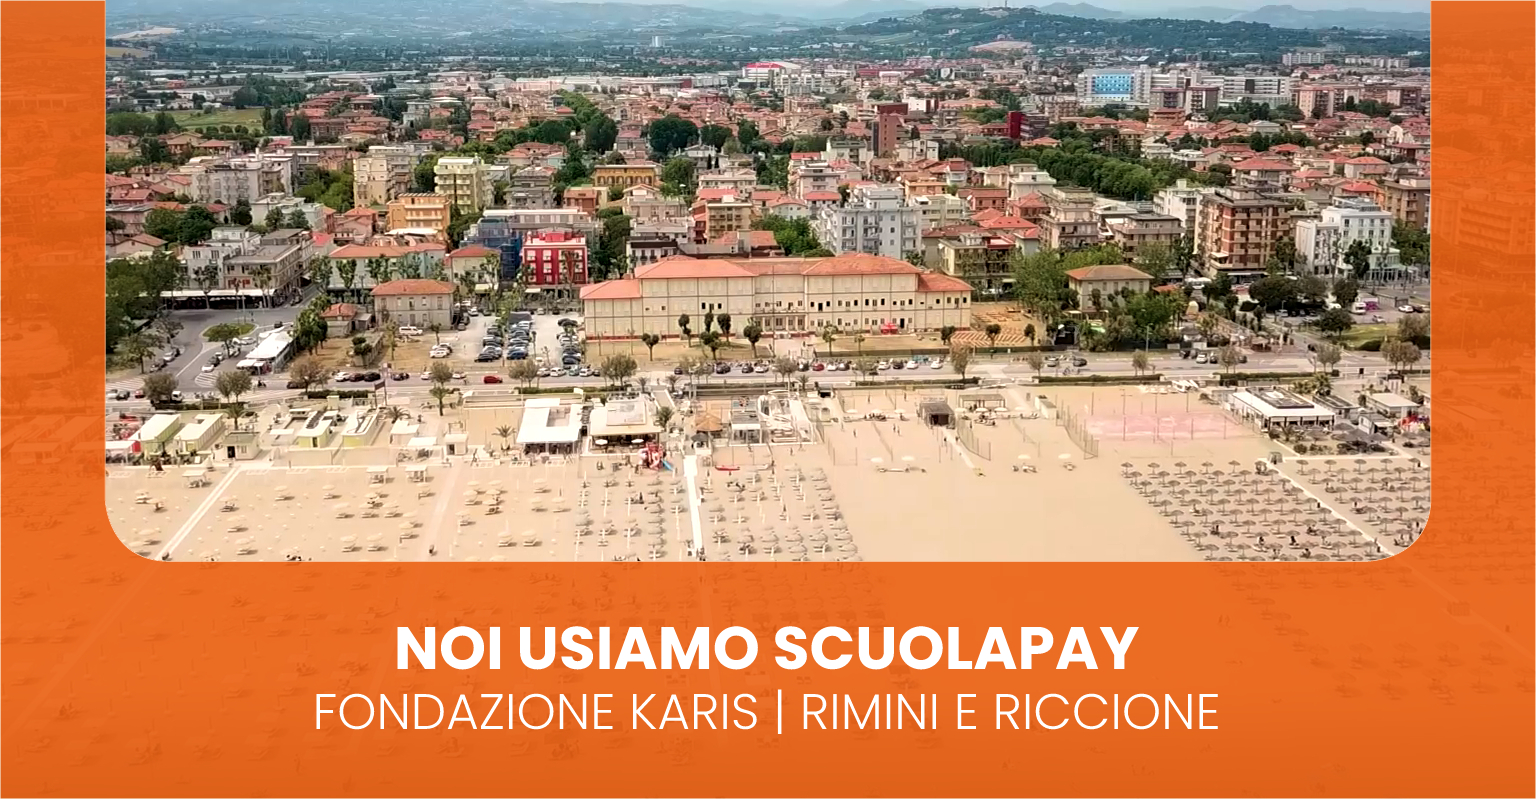 Le scuole paritarie della Fondazione Karis di Rimini e Riccione aderiscono a ScuolaPay